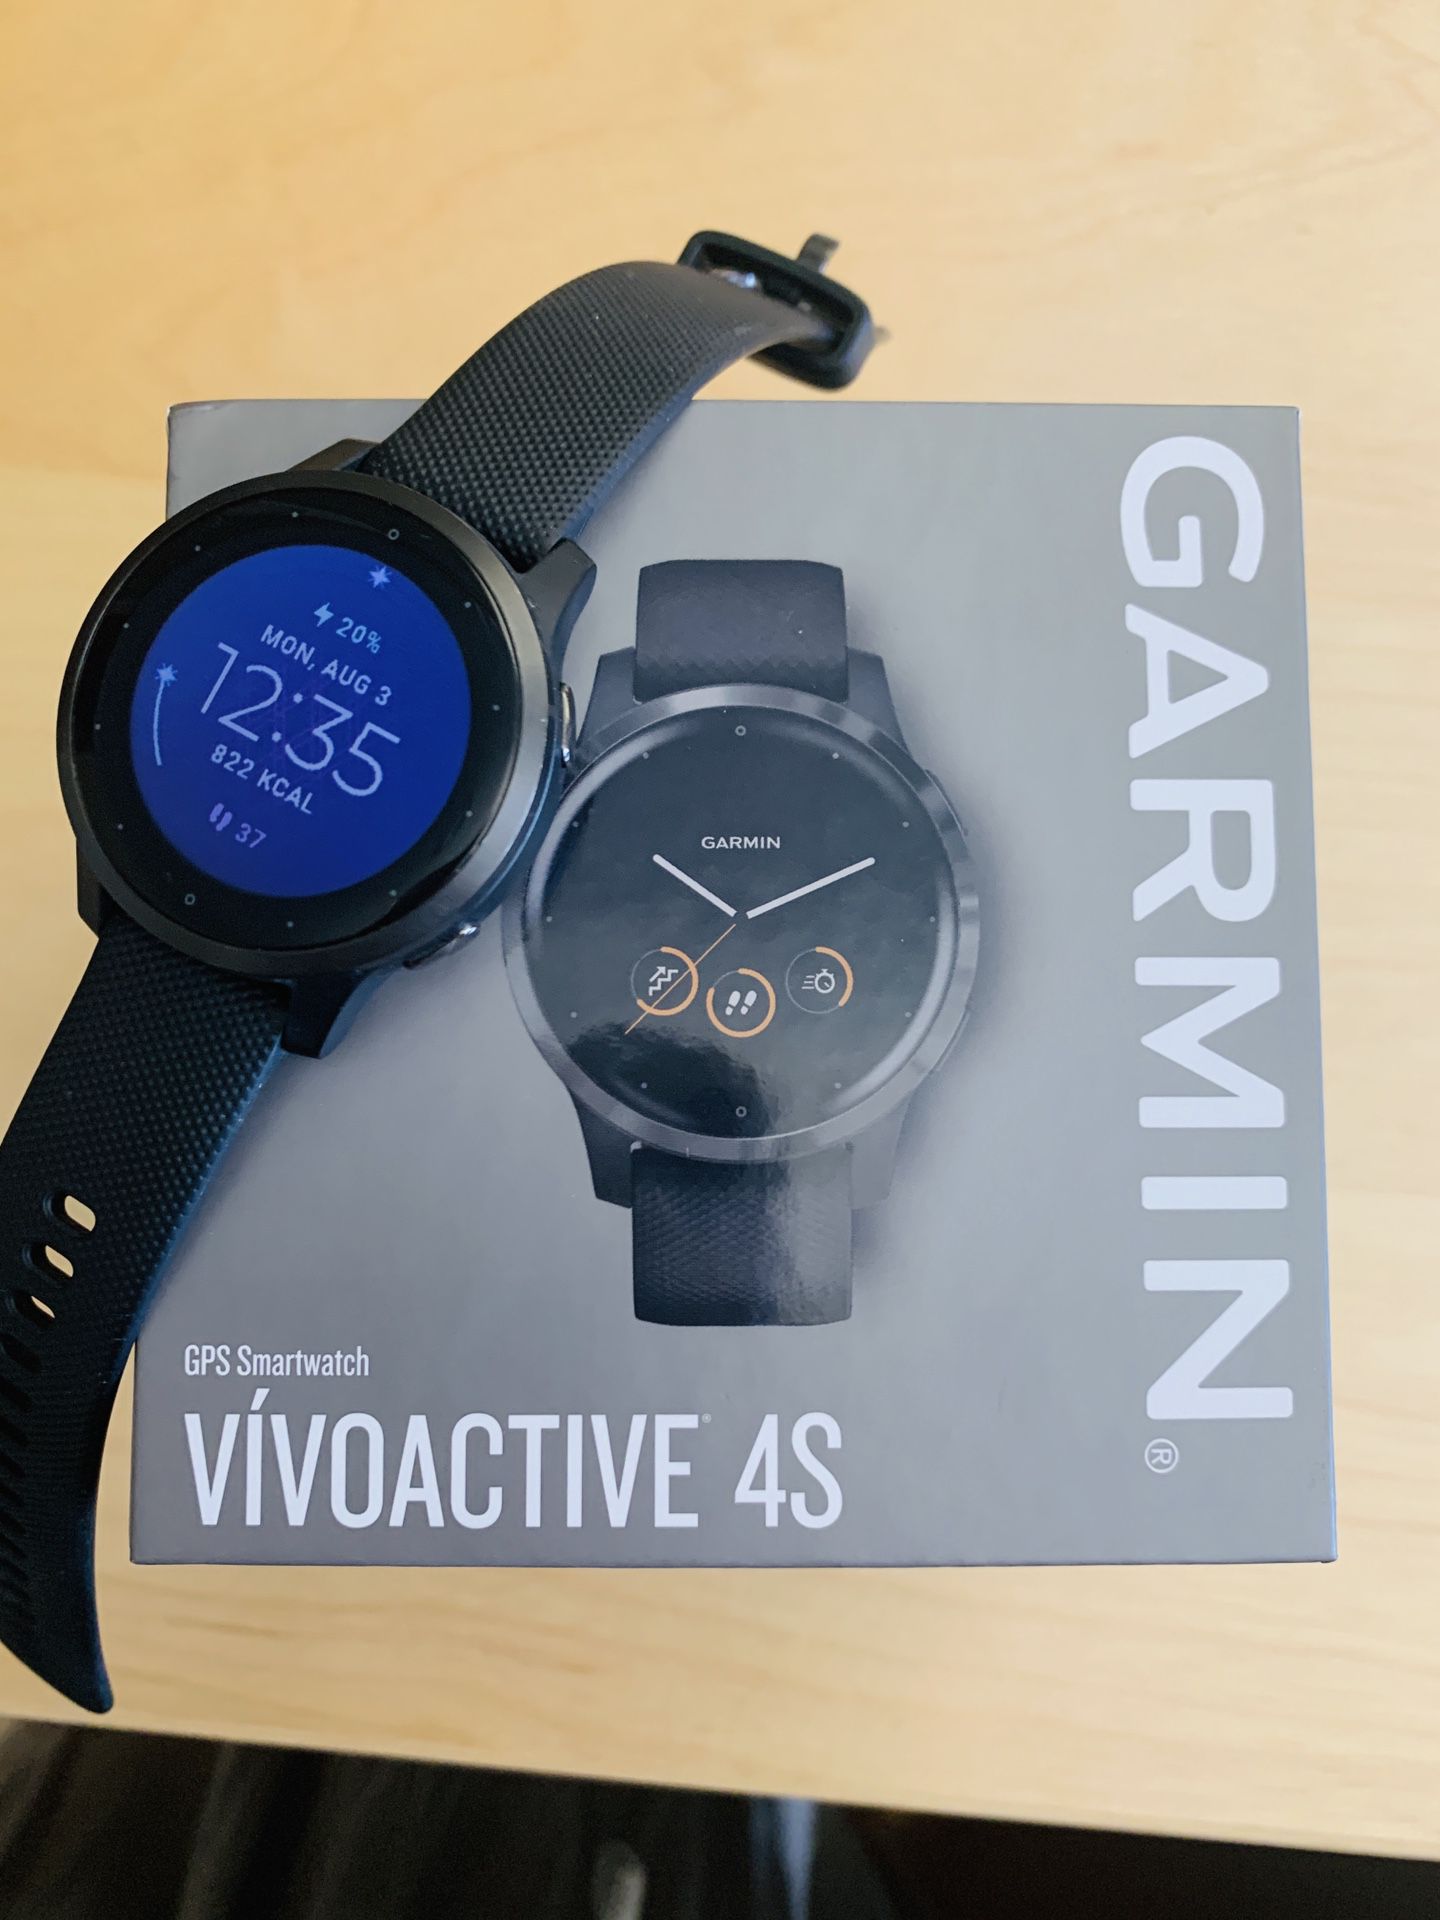 Garmin Vivoactive 4S